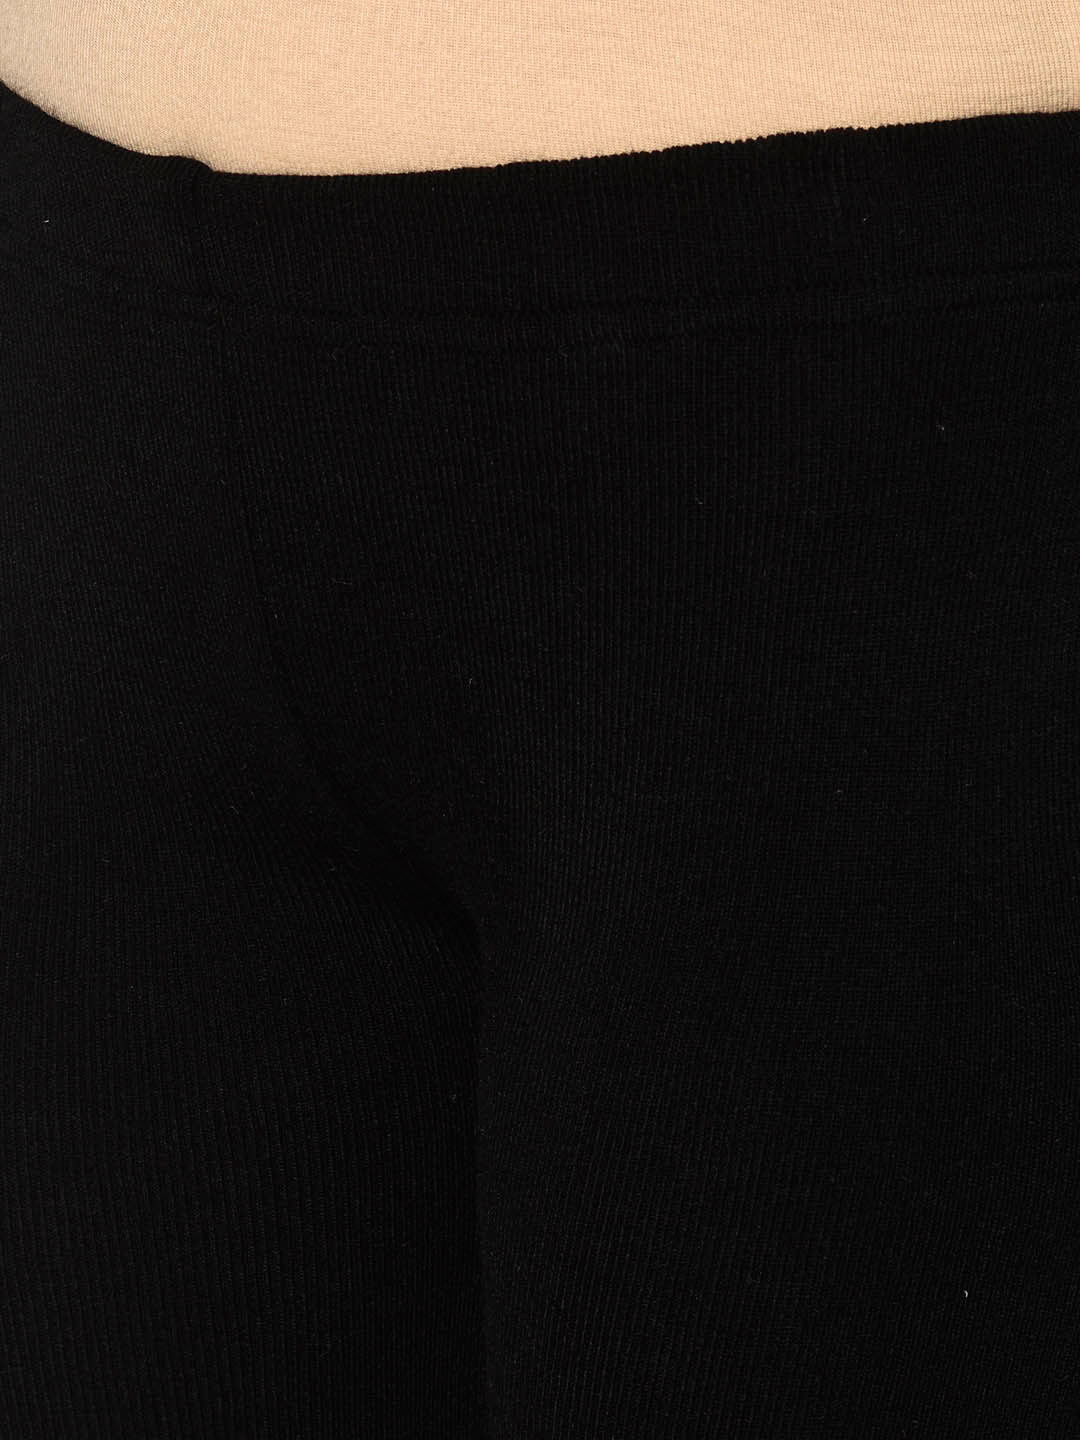 Black Acrylic Warm Bottomwear With Slit